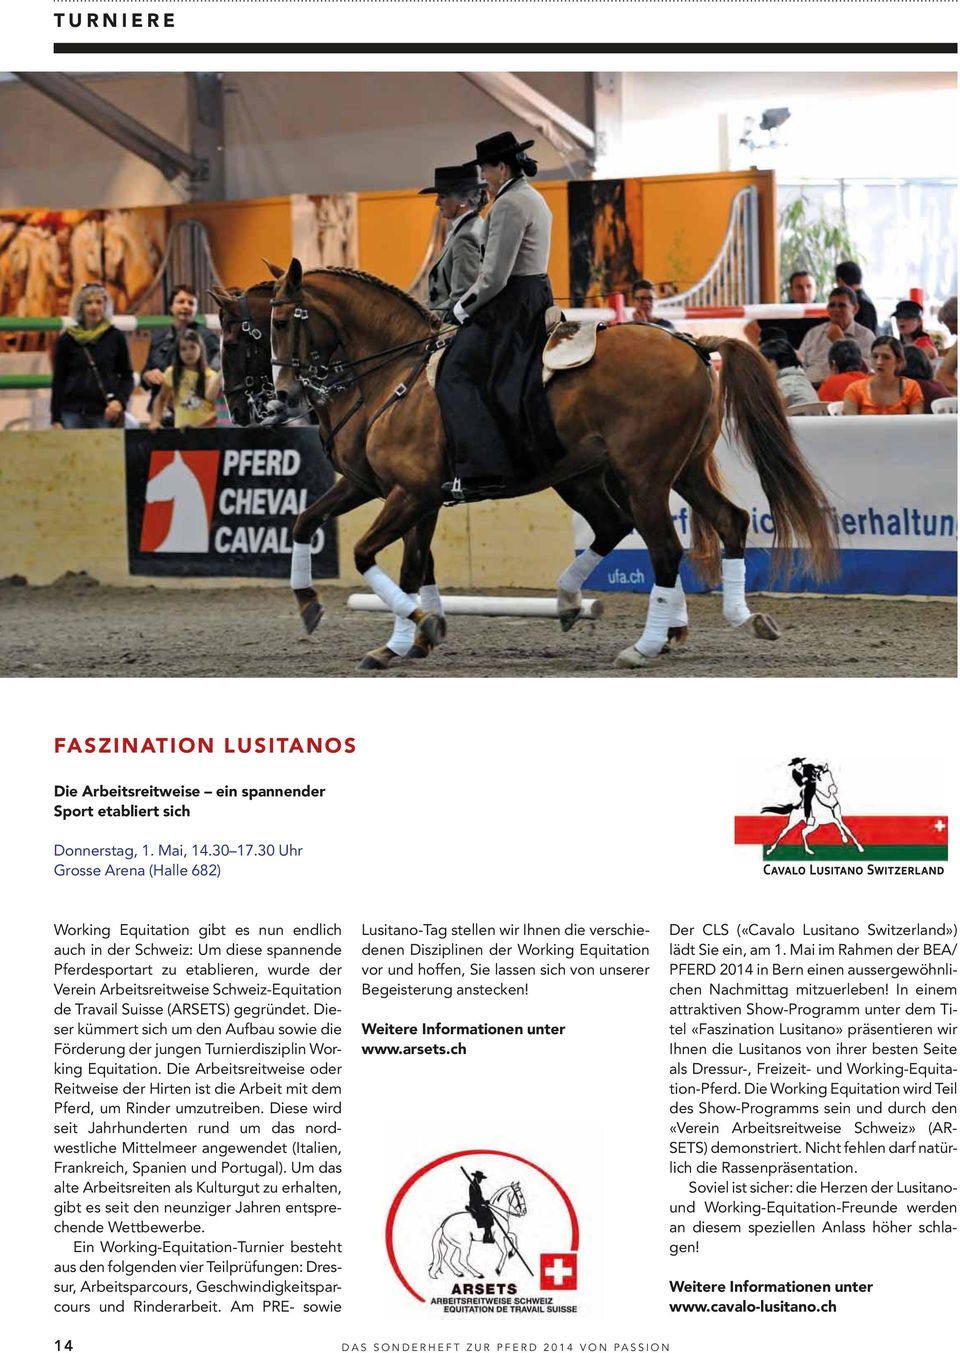 Travail Suisse (ARSETS) gegründet. Dieser kümmert sich um den Aufbau sowie die Förderung der jungen Turnierdisziplin Working Equitation.